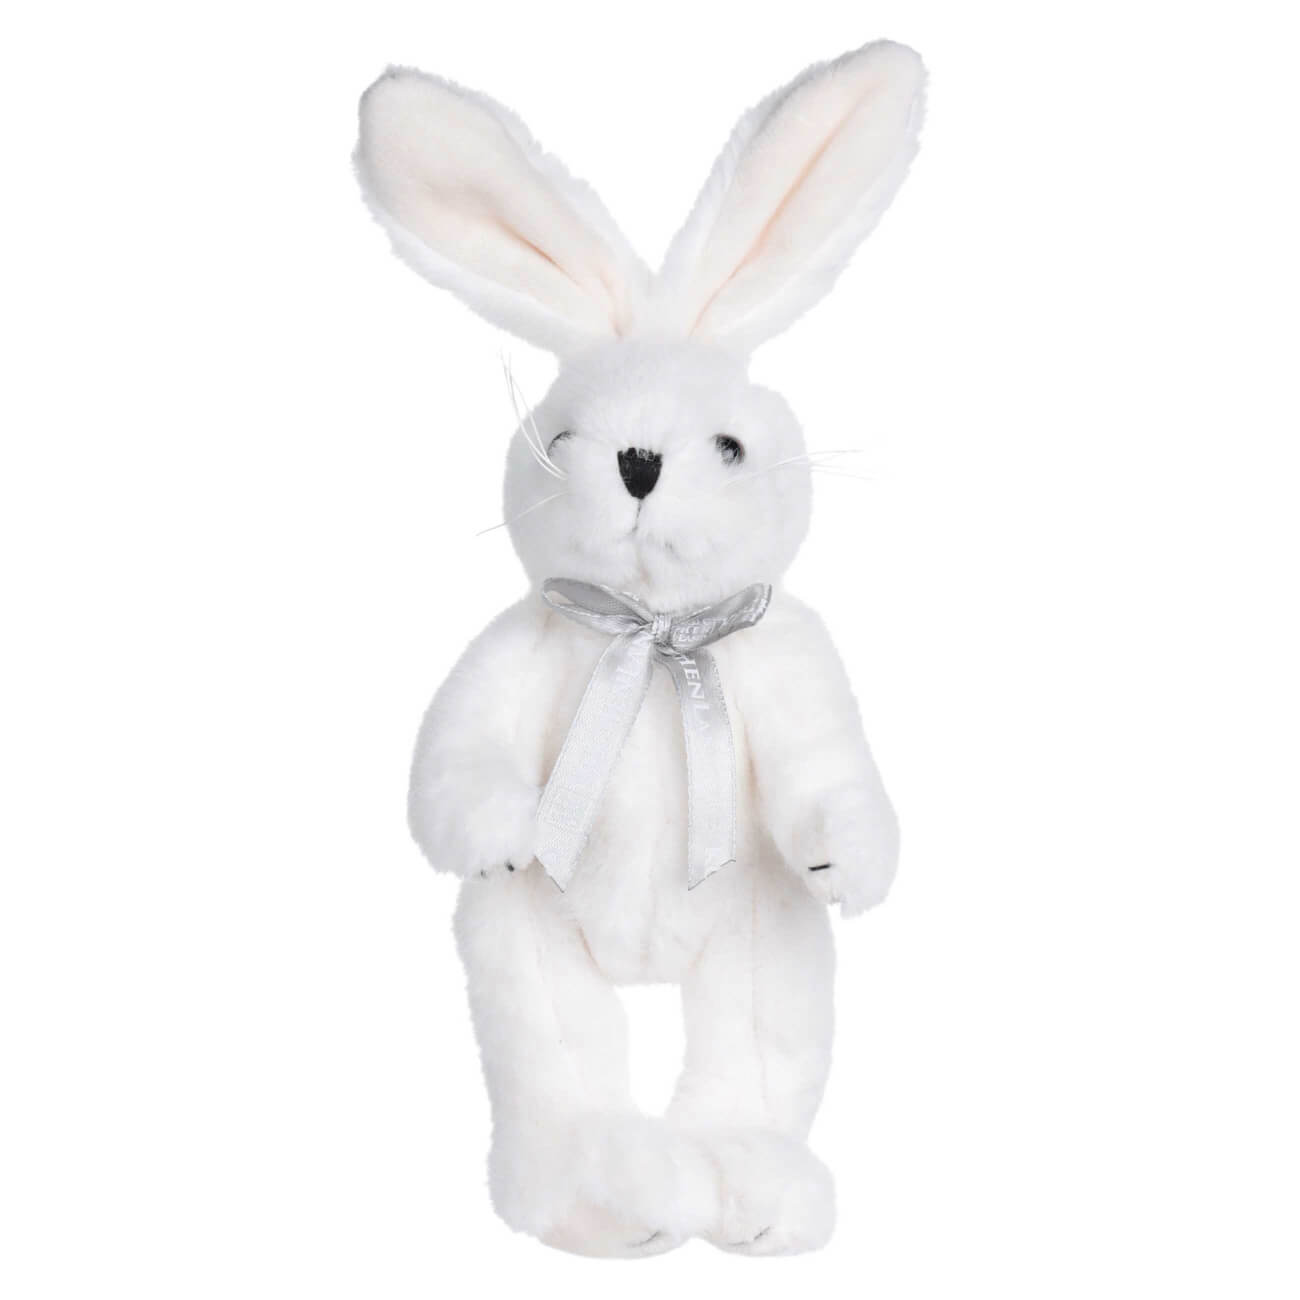 Игрушка, 20 см, мягкая, с подвижными лапами, полиэстер, белая, Кролик, Rabbit toy мягкая игрушка басик в полосатом свитере 19 см